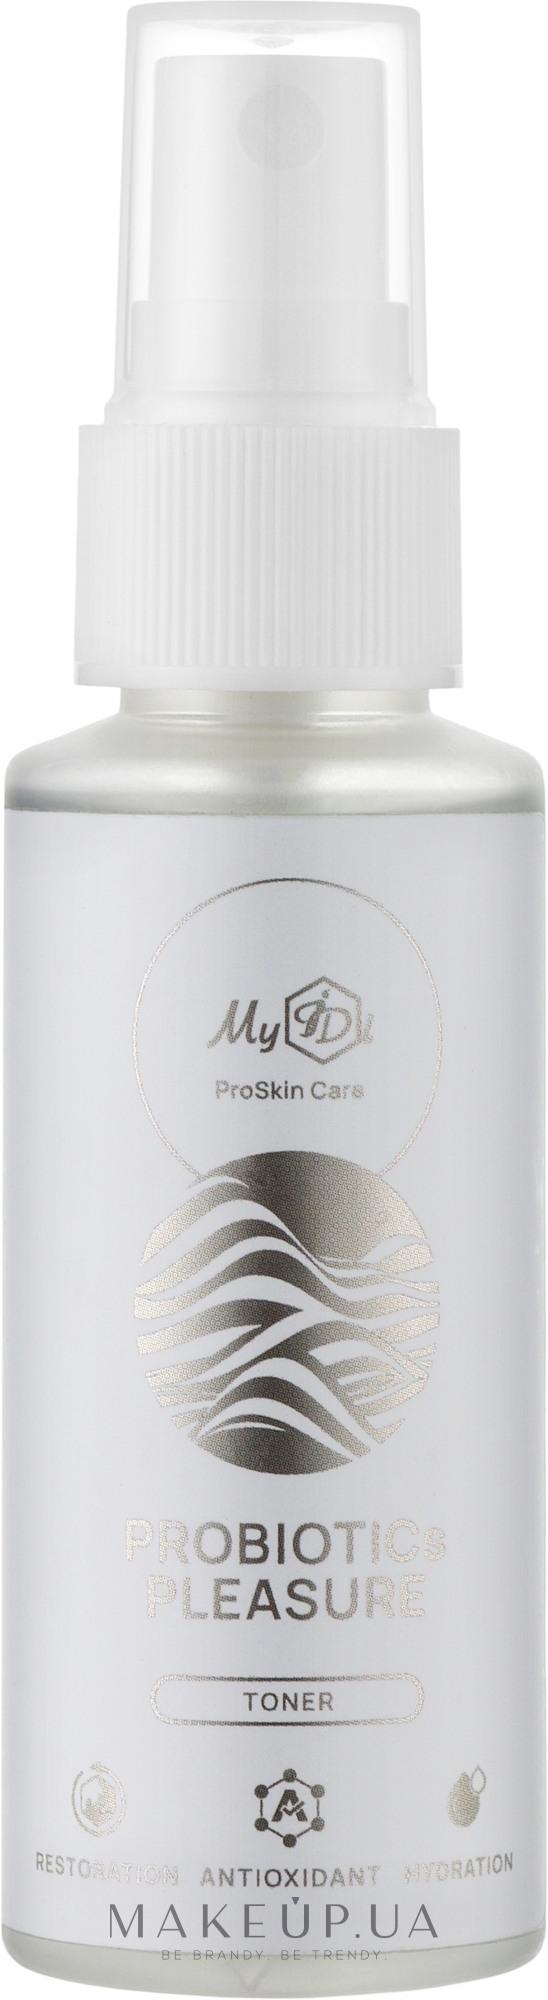 Тонер с пробиотиками - MyIDi Probiotics Pleasure Toner (мини) — фото 50ml